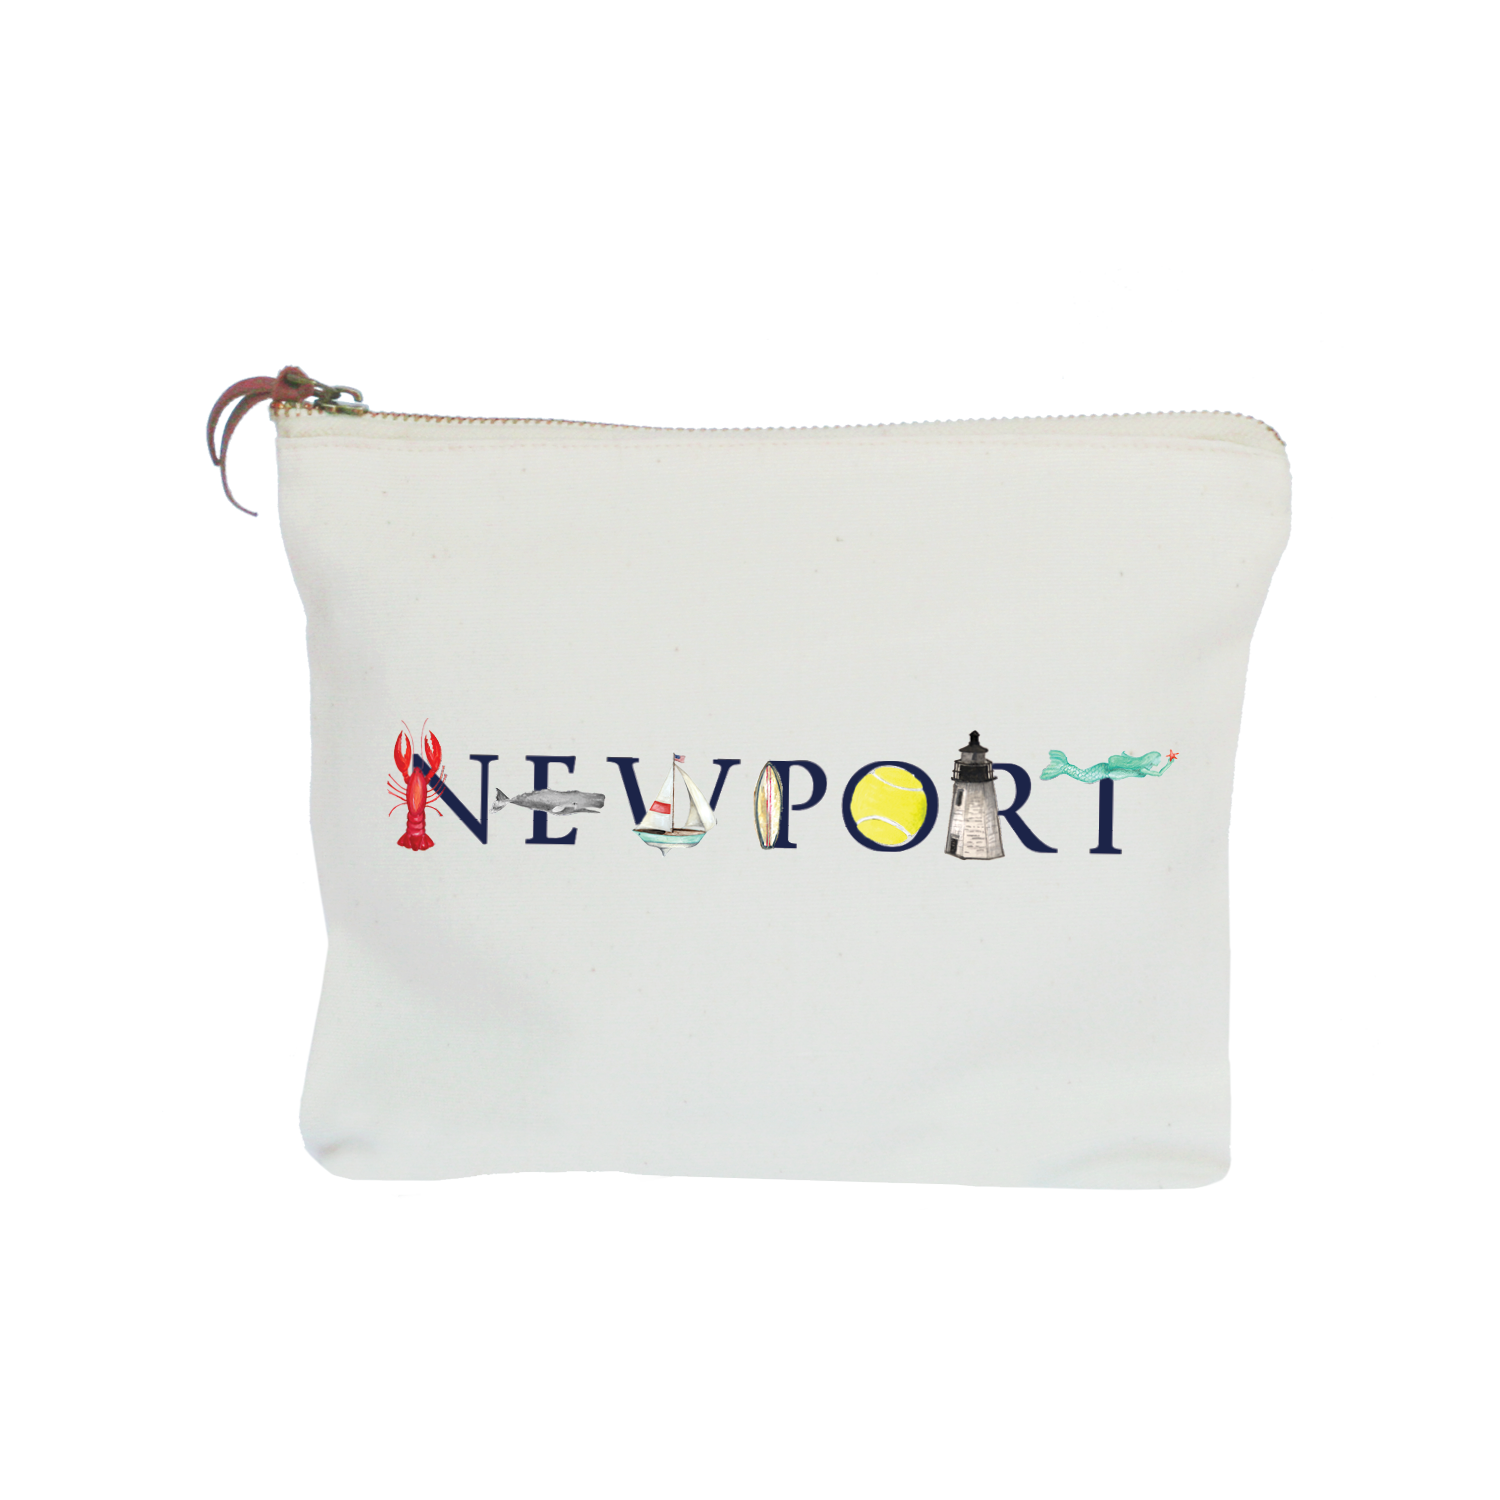 Newport zipper pouch